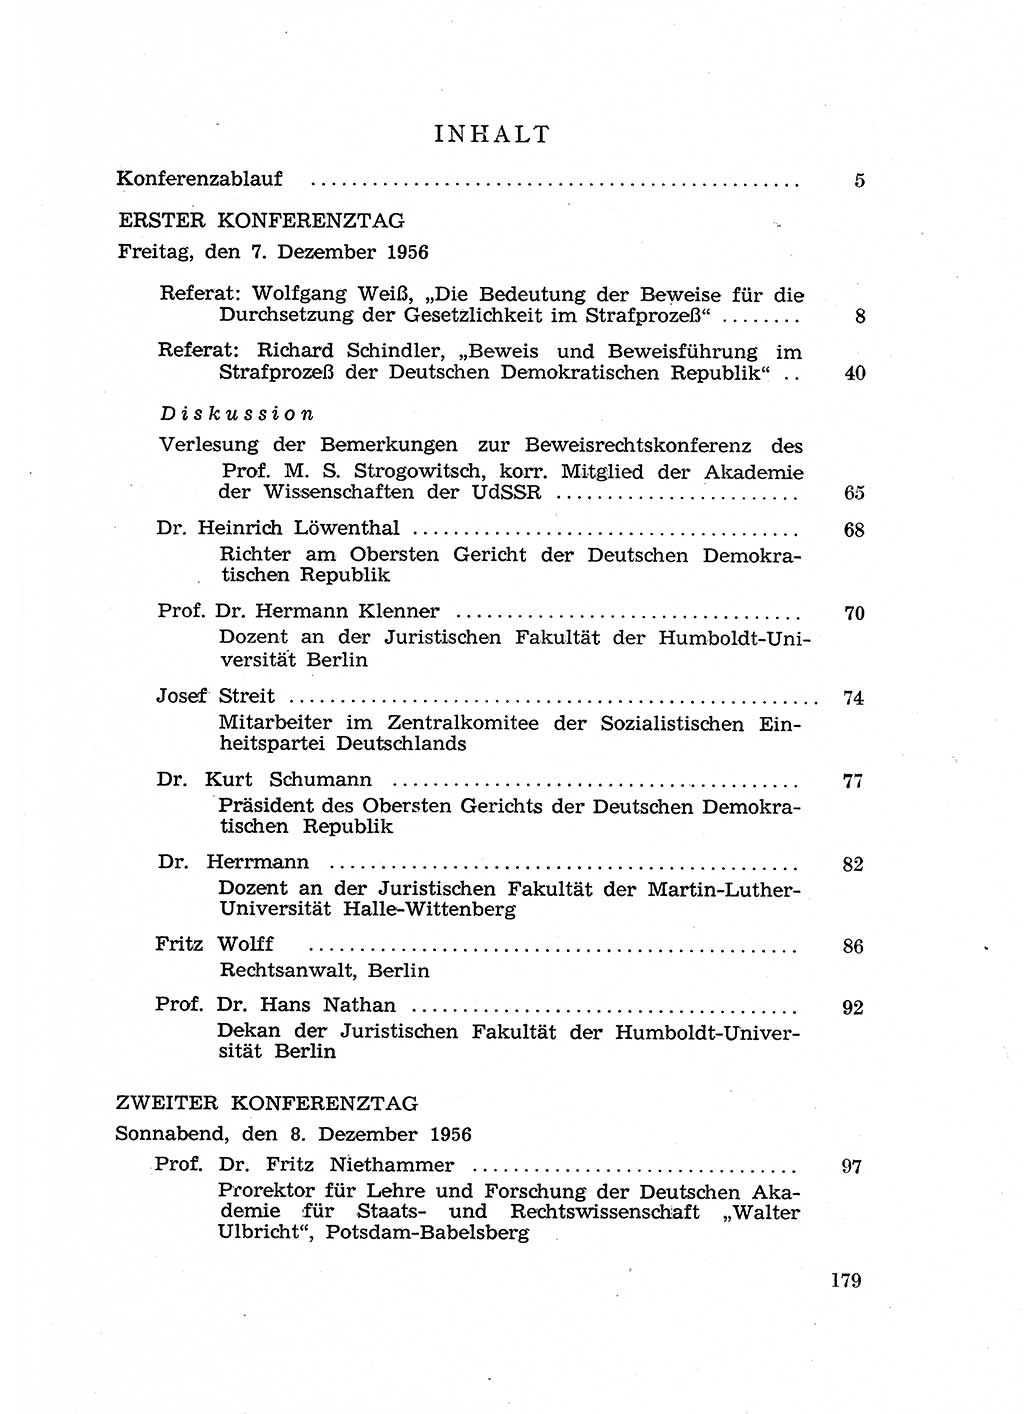 Fragen des Beweisrechts im Strafprozess [Deutsche Demokratische Republik (DDR)] 1956, Seite 179 (Fr. BeweisR. Str.-Proz. DDR 1956, S. 179)